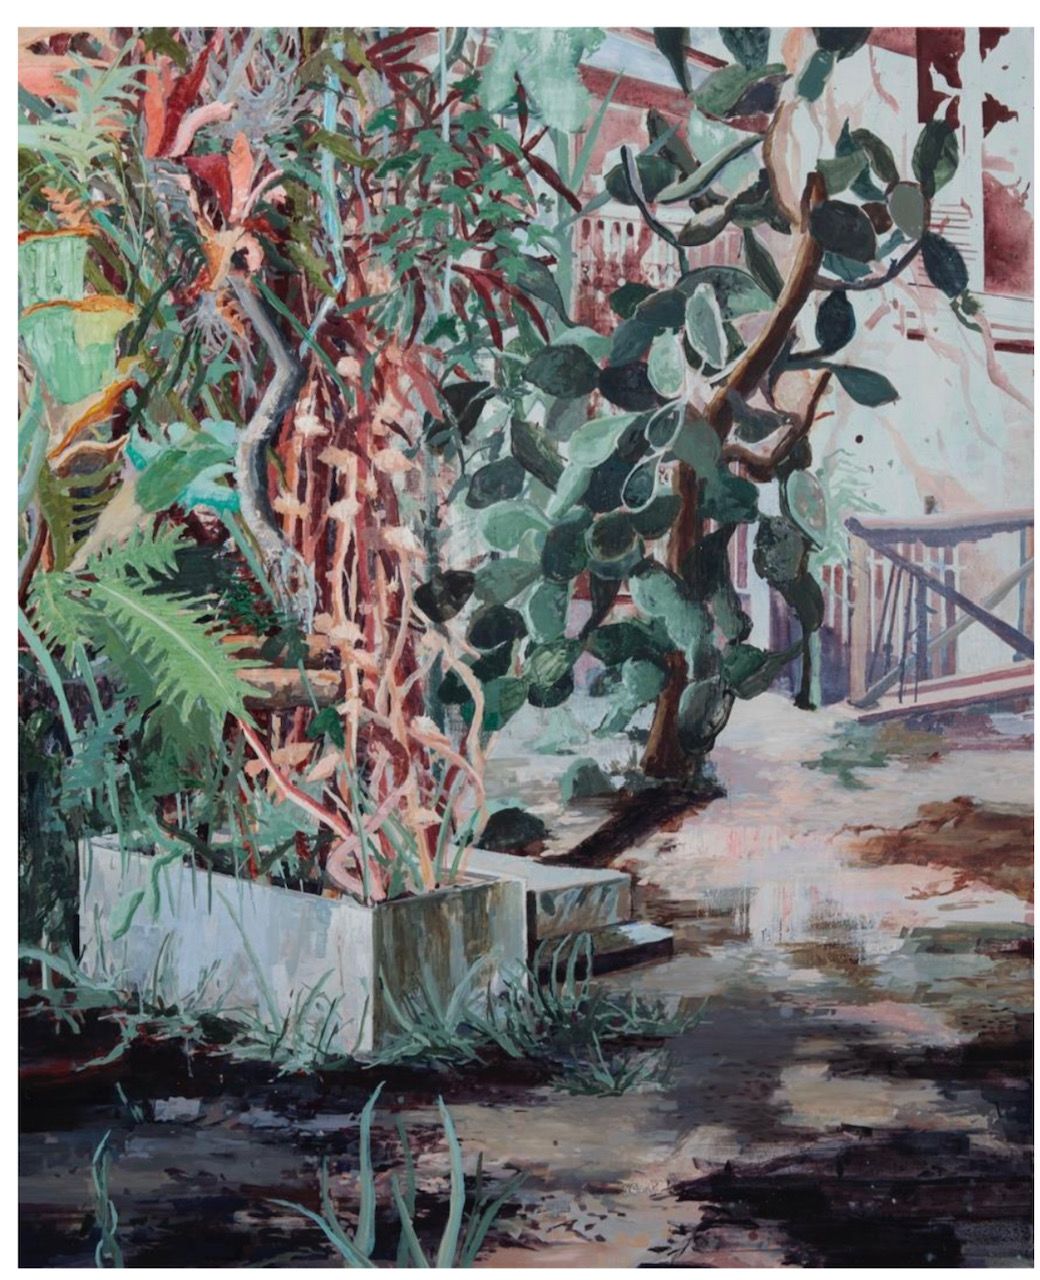 View of an expressionist garden scene with exotic plants in a court yard.

Blick auf eine expressionistische Gartenszene mit exotischen Pflanzen in einem Innenhof.